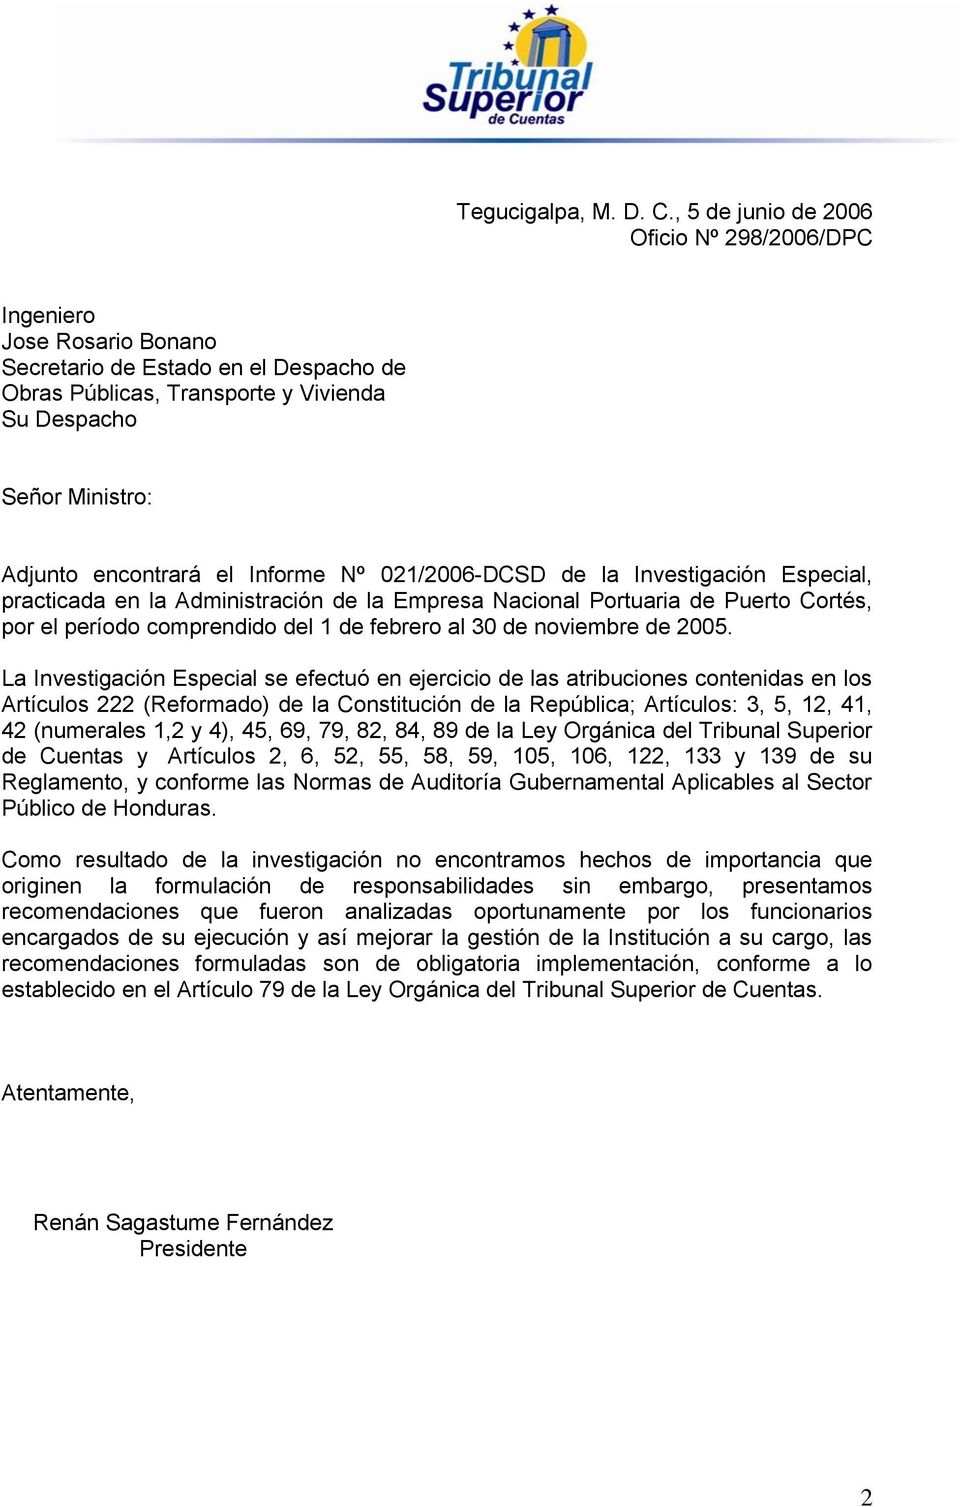 el Informe Nº 021/2006-DCSD de la Investigación Especial, practicada en la Administración de la Empresa Nacional Portuaria de Puerto Cortés, por el período comprendido del 1 de febrero al 30 de